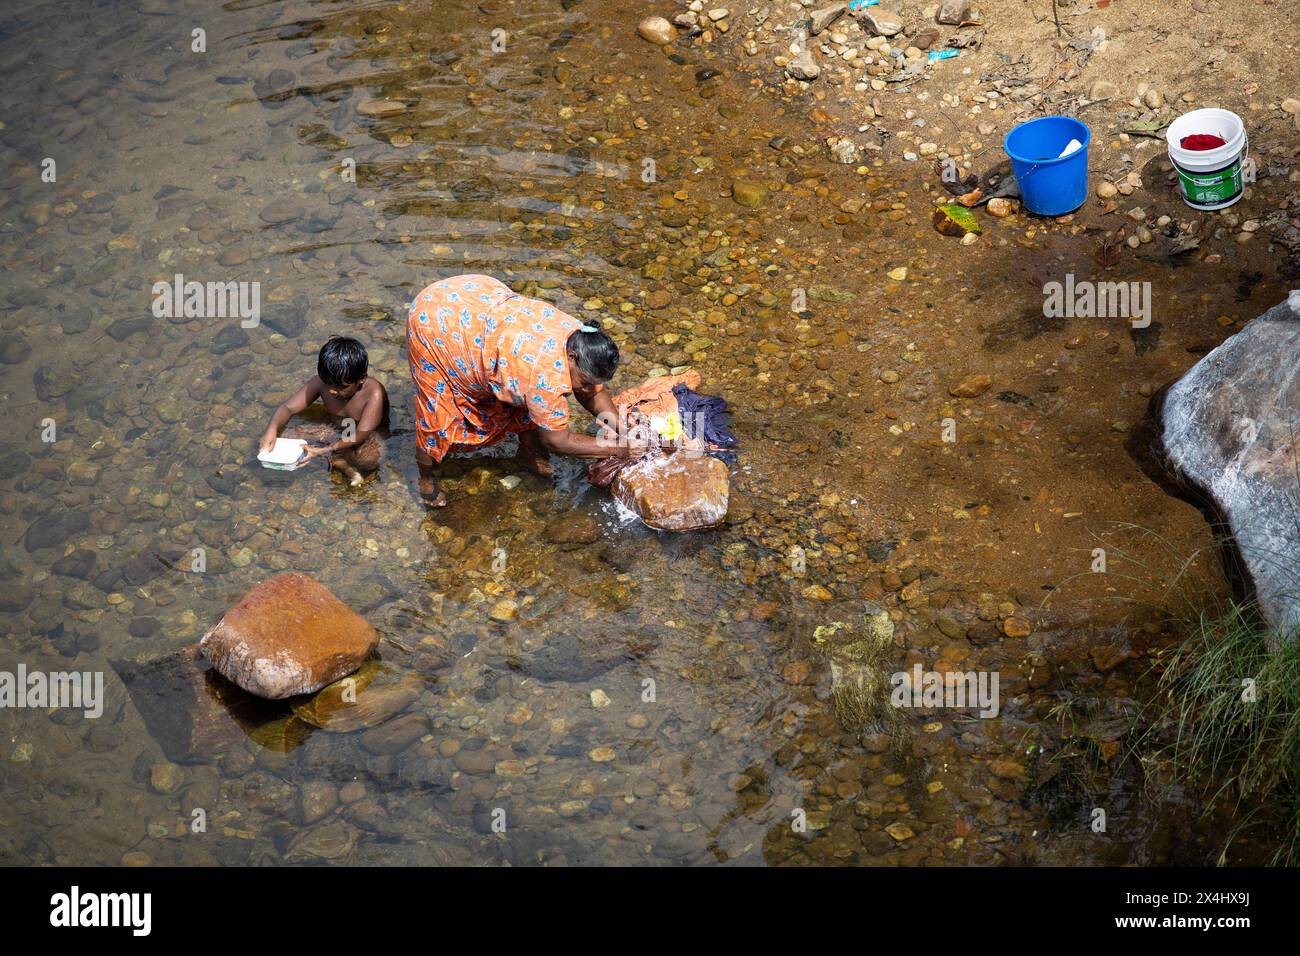 Femme indienne lavant des vêtements dans la rivière Periyar, son fils jouant à côté d'elle, Mundakayam, Kerala, Inde Banque D'Images